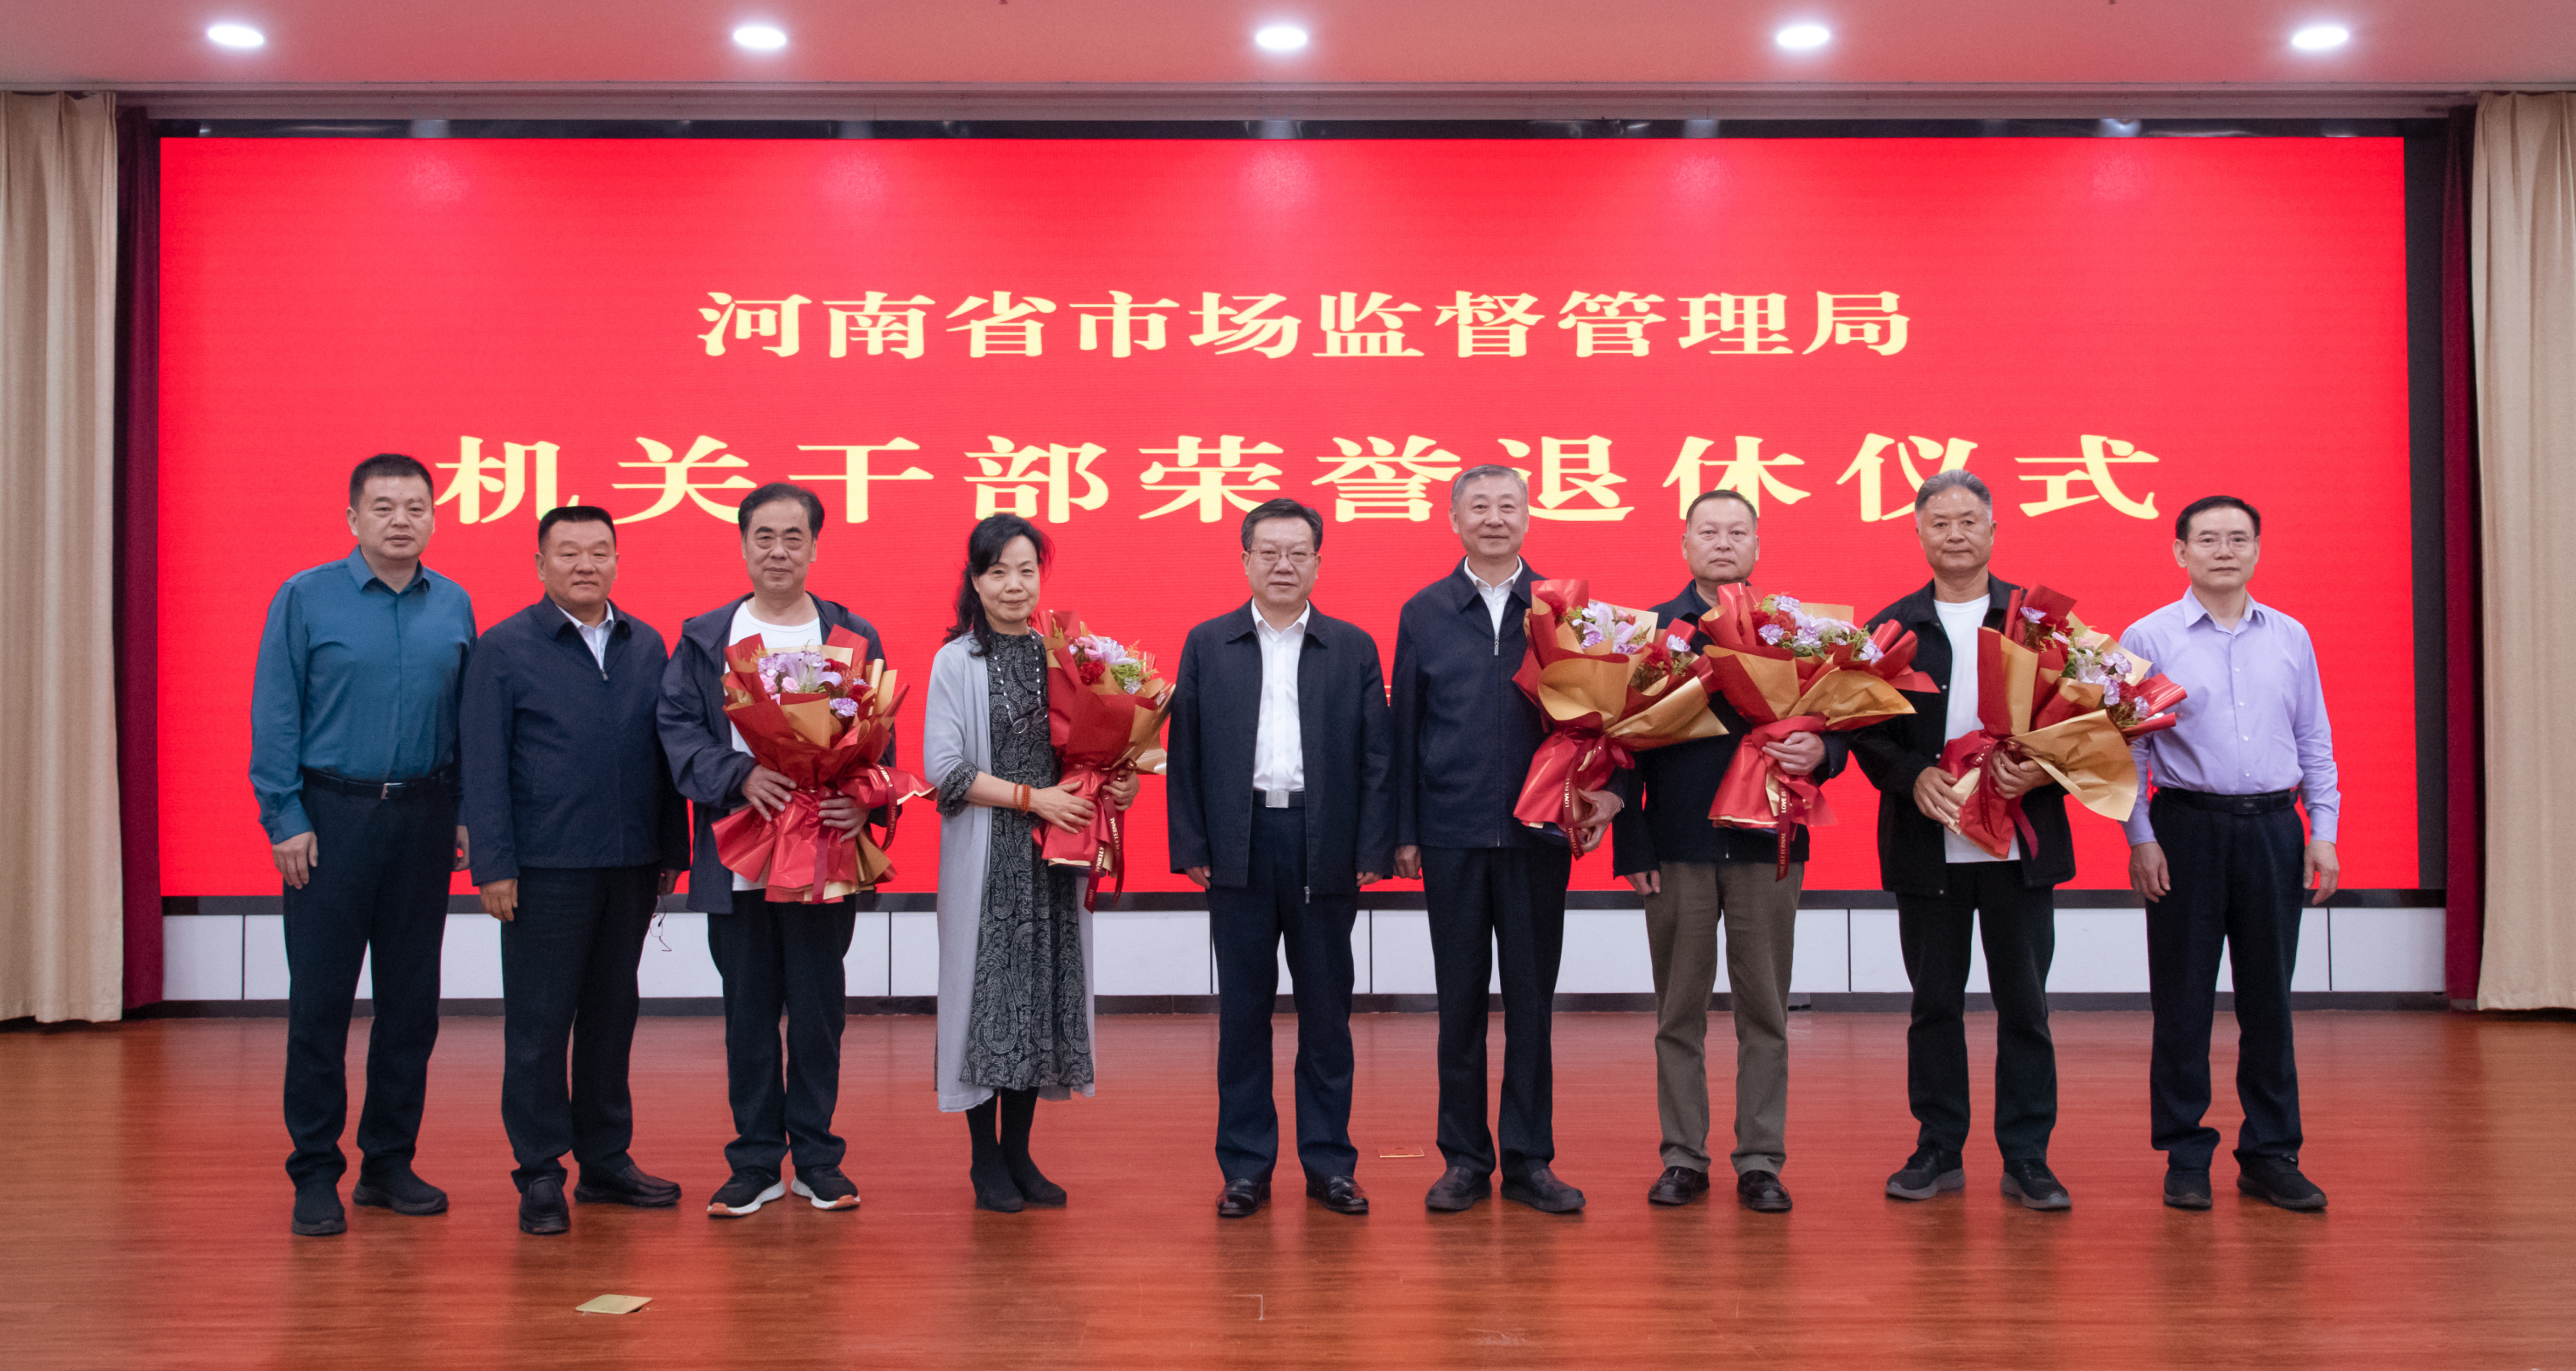 河南省市场监管局举行干部荣誉退休仪式